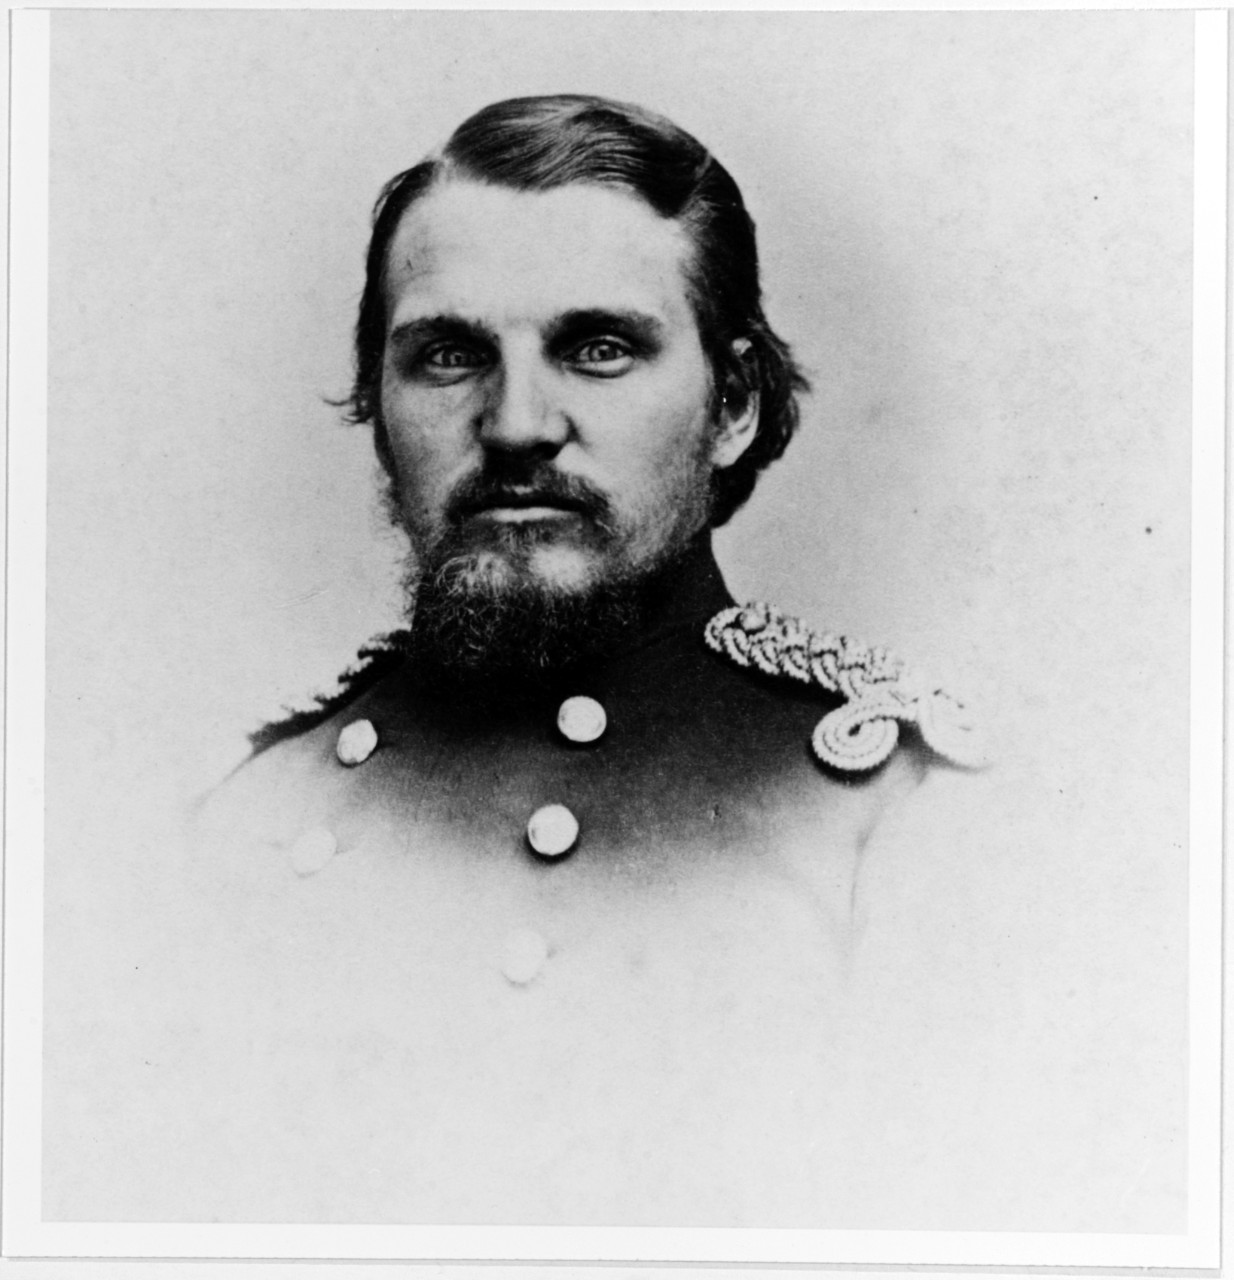 First Lieutenant S.W. Powell, USMC